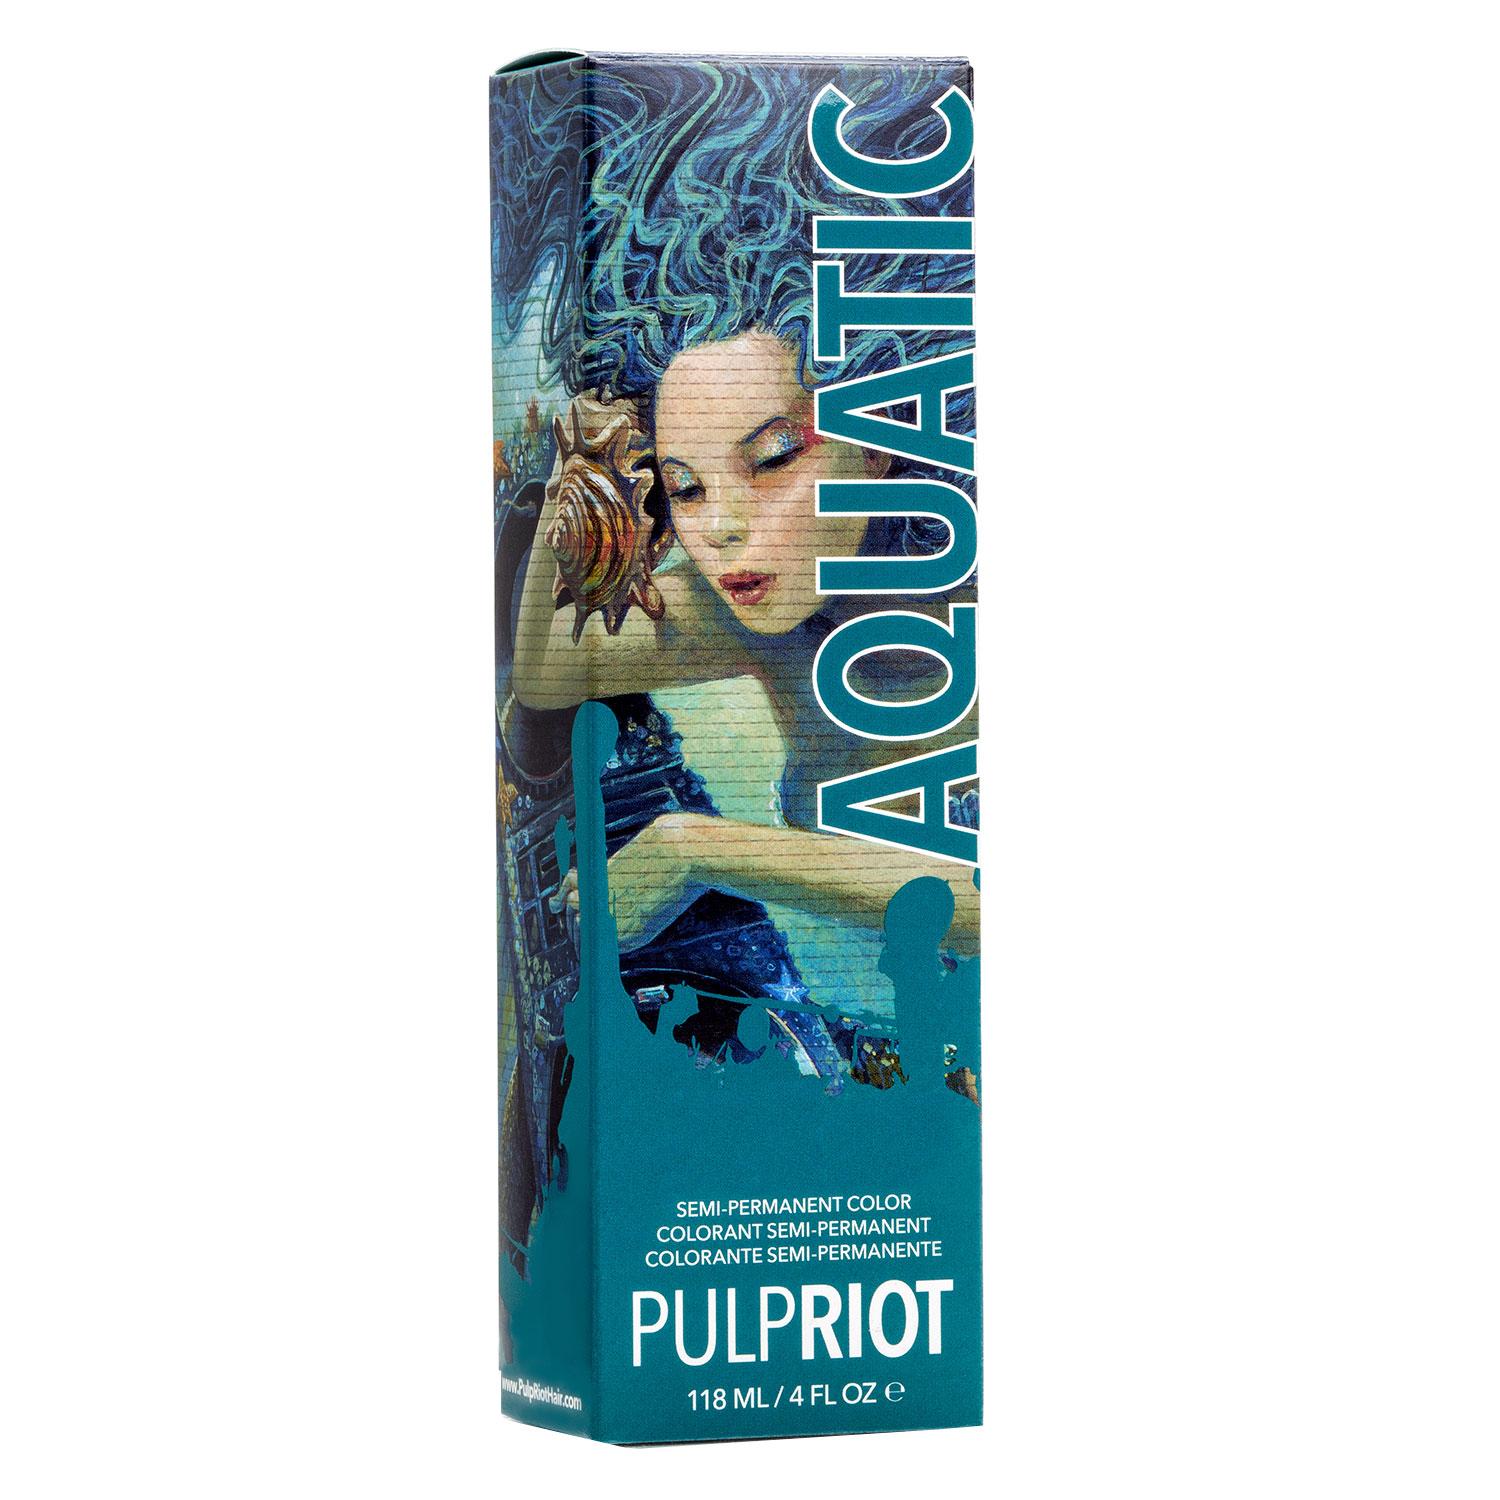 Pulp Riot - Aquatic